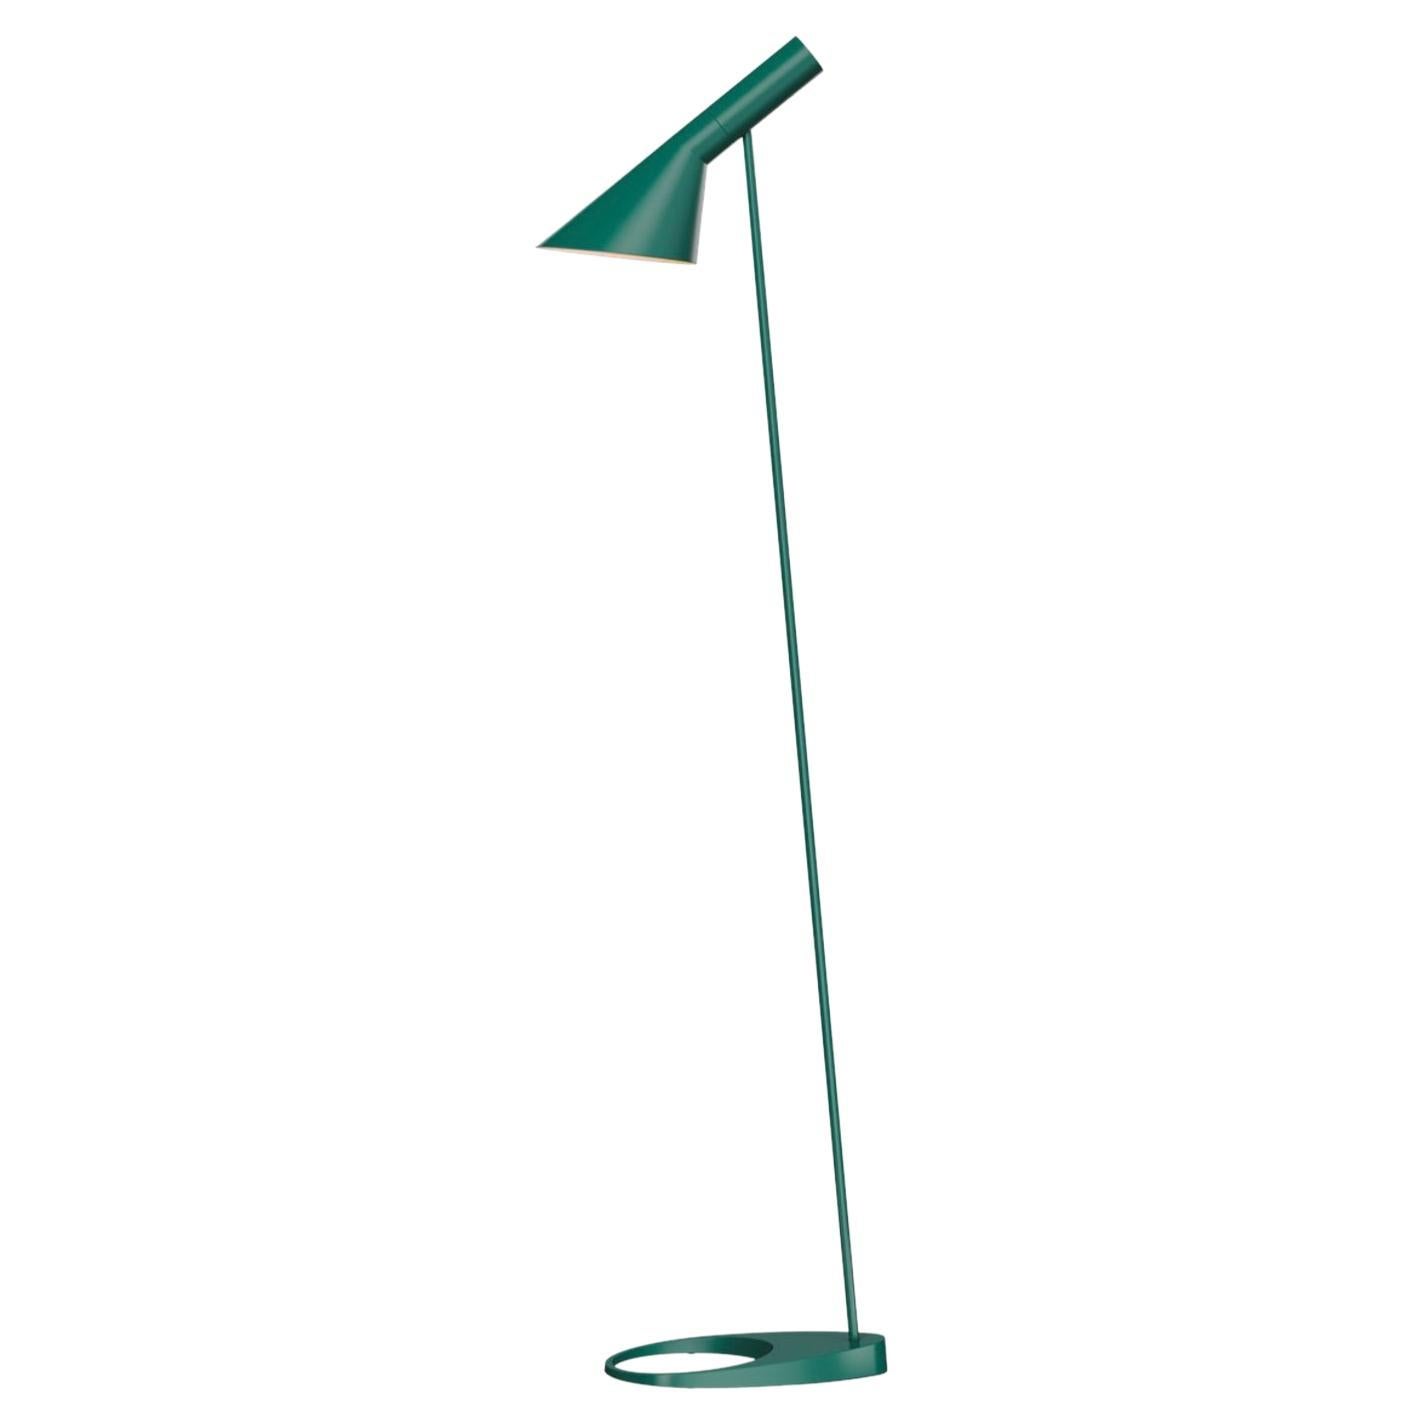 Arne Jacobsen AJ Floor Lamp 1957 in Dark Green for Louis Poulsen For Sale